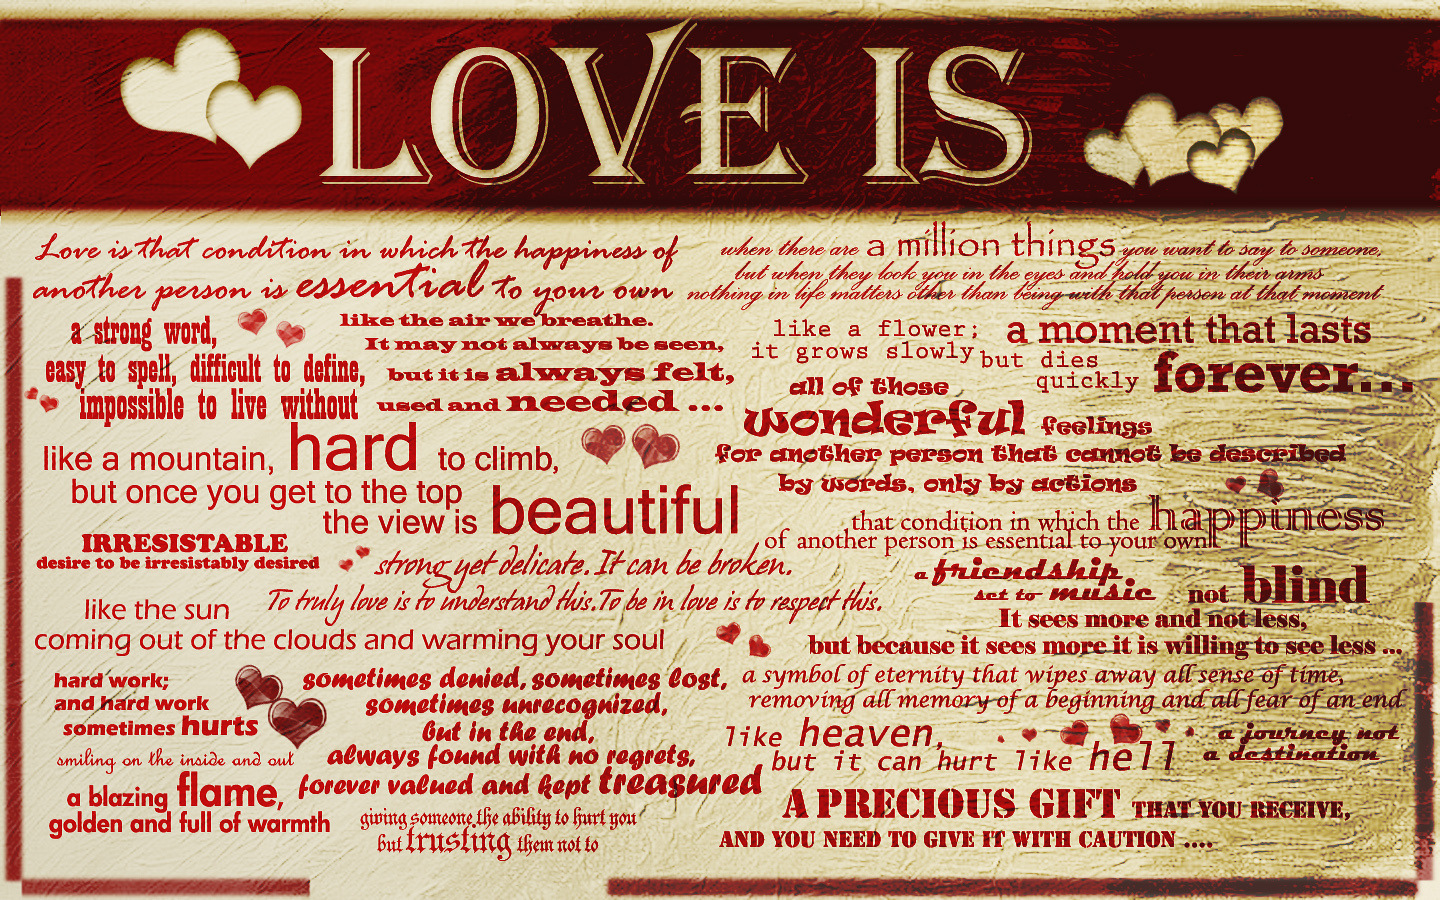 Beautiful Love Words. Английские газеты про любовь картинки. Love is strong. Любовные картинки на турецком языке-. Ало ало ало лов лов лов